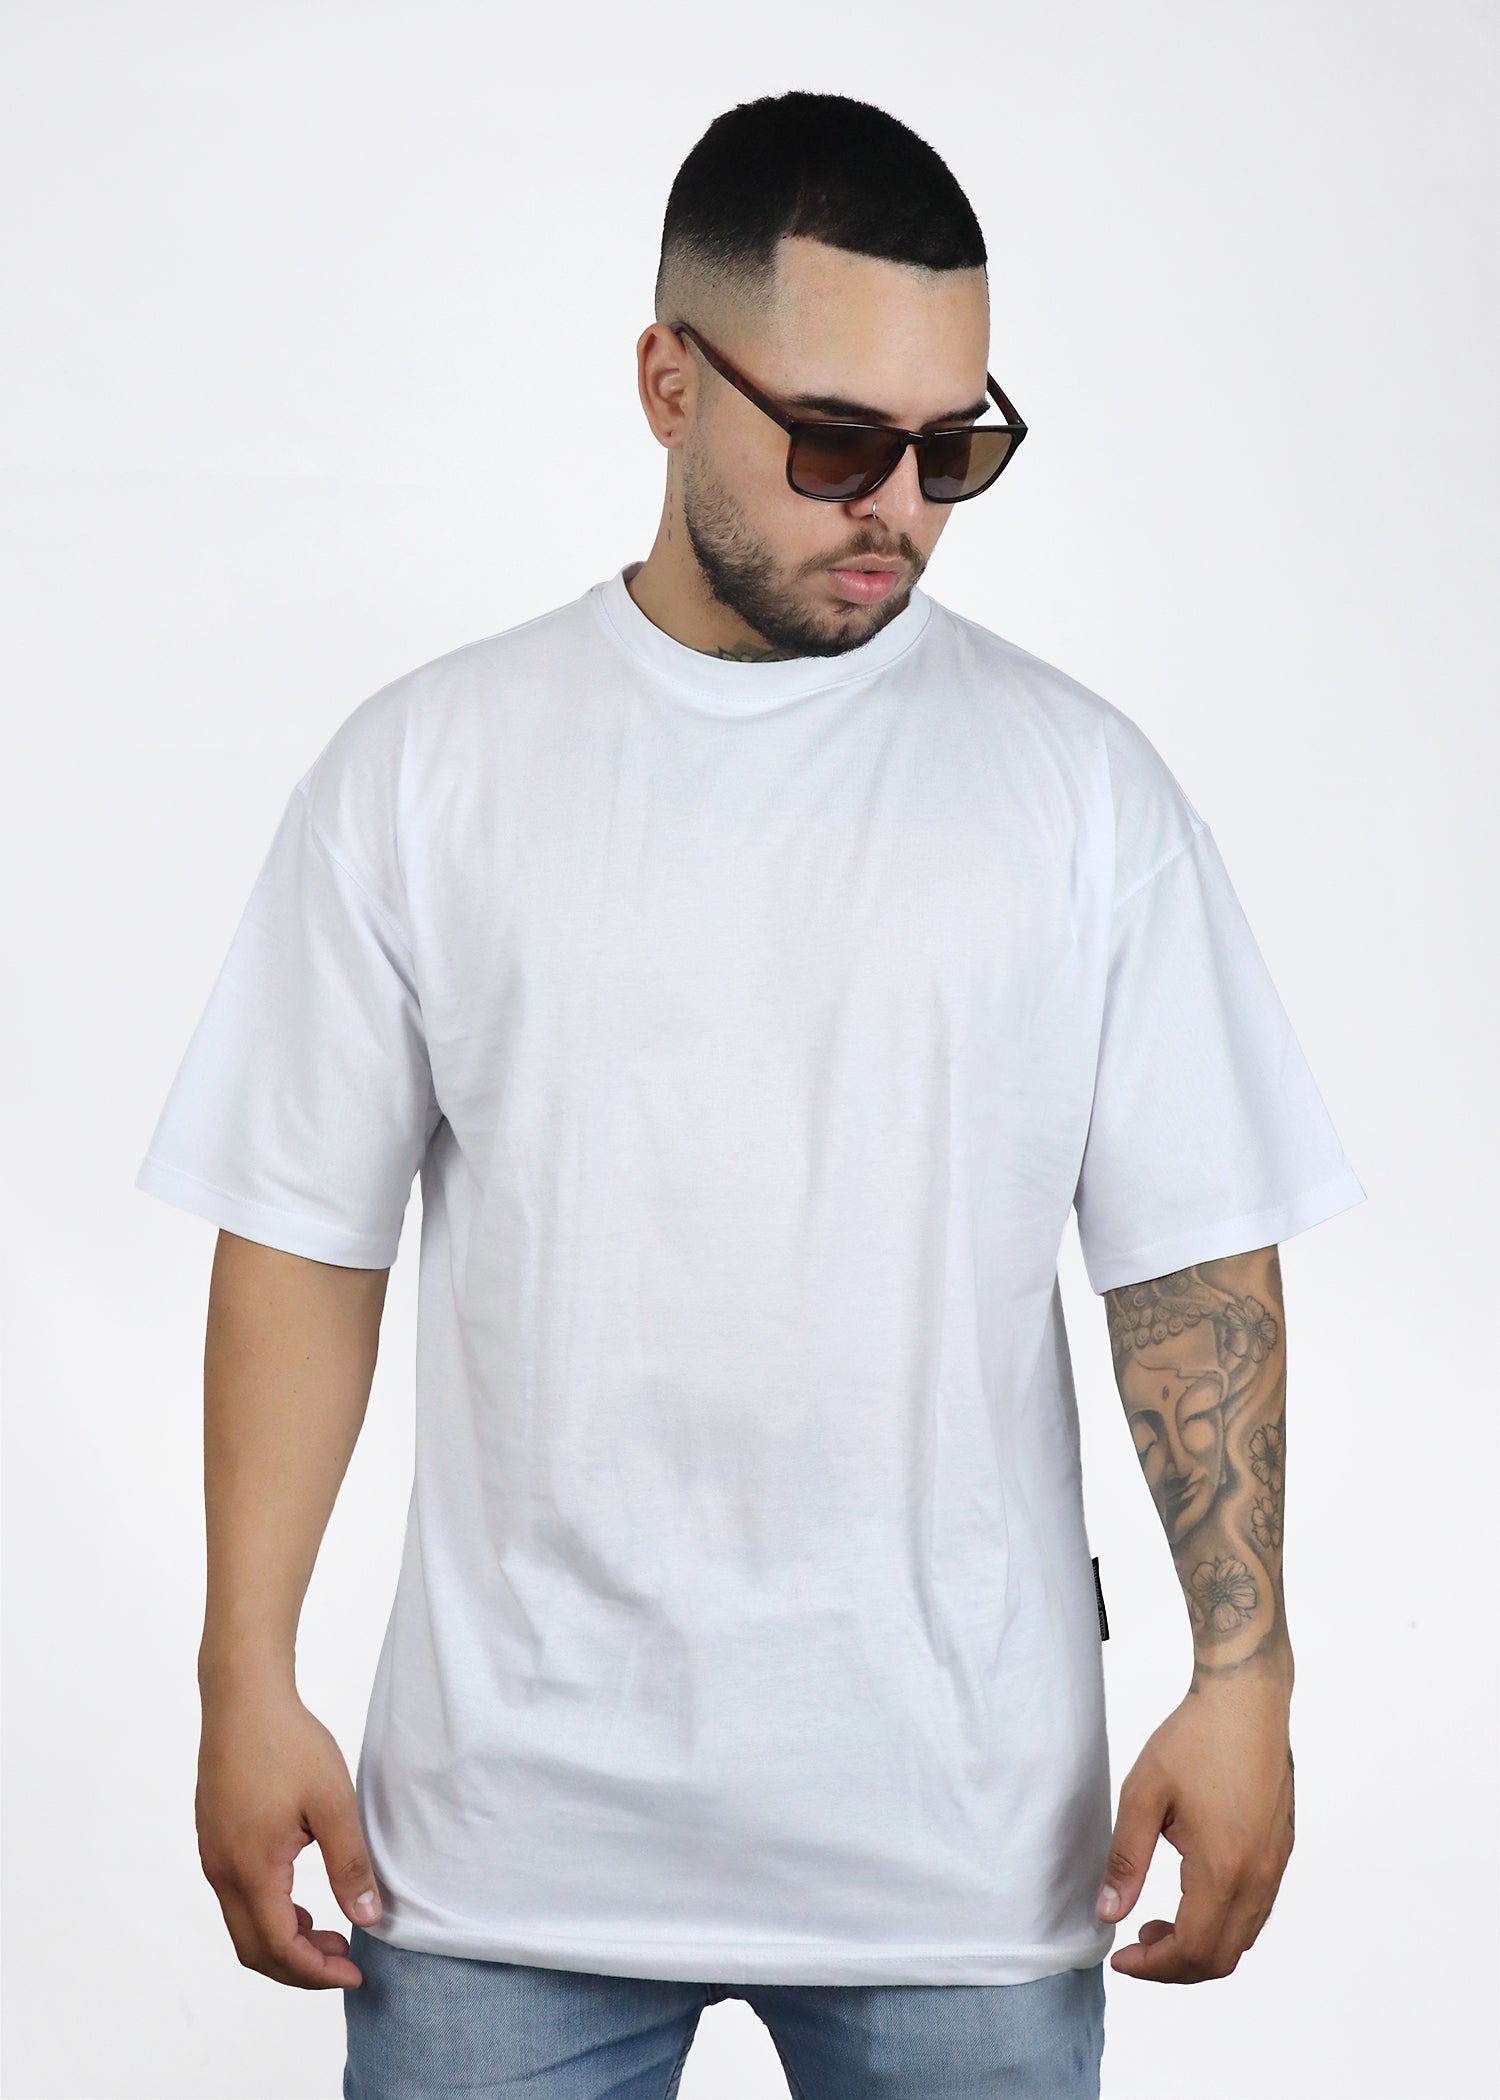 Camiseta T-shirt Básica Blanca